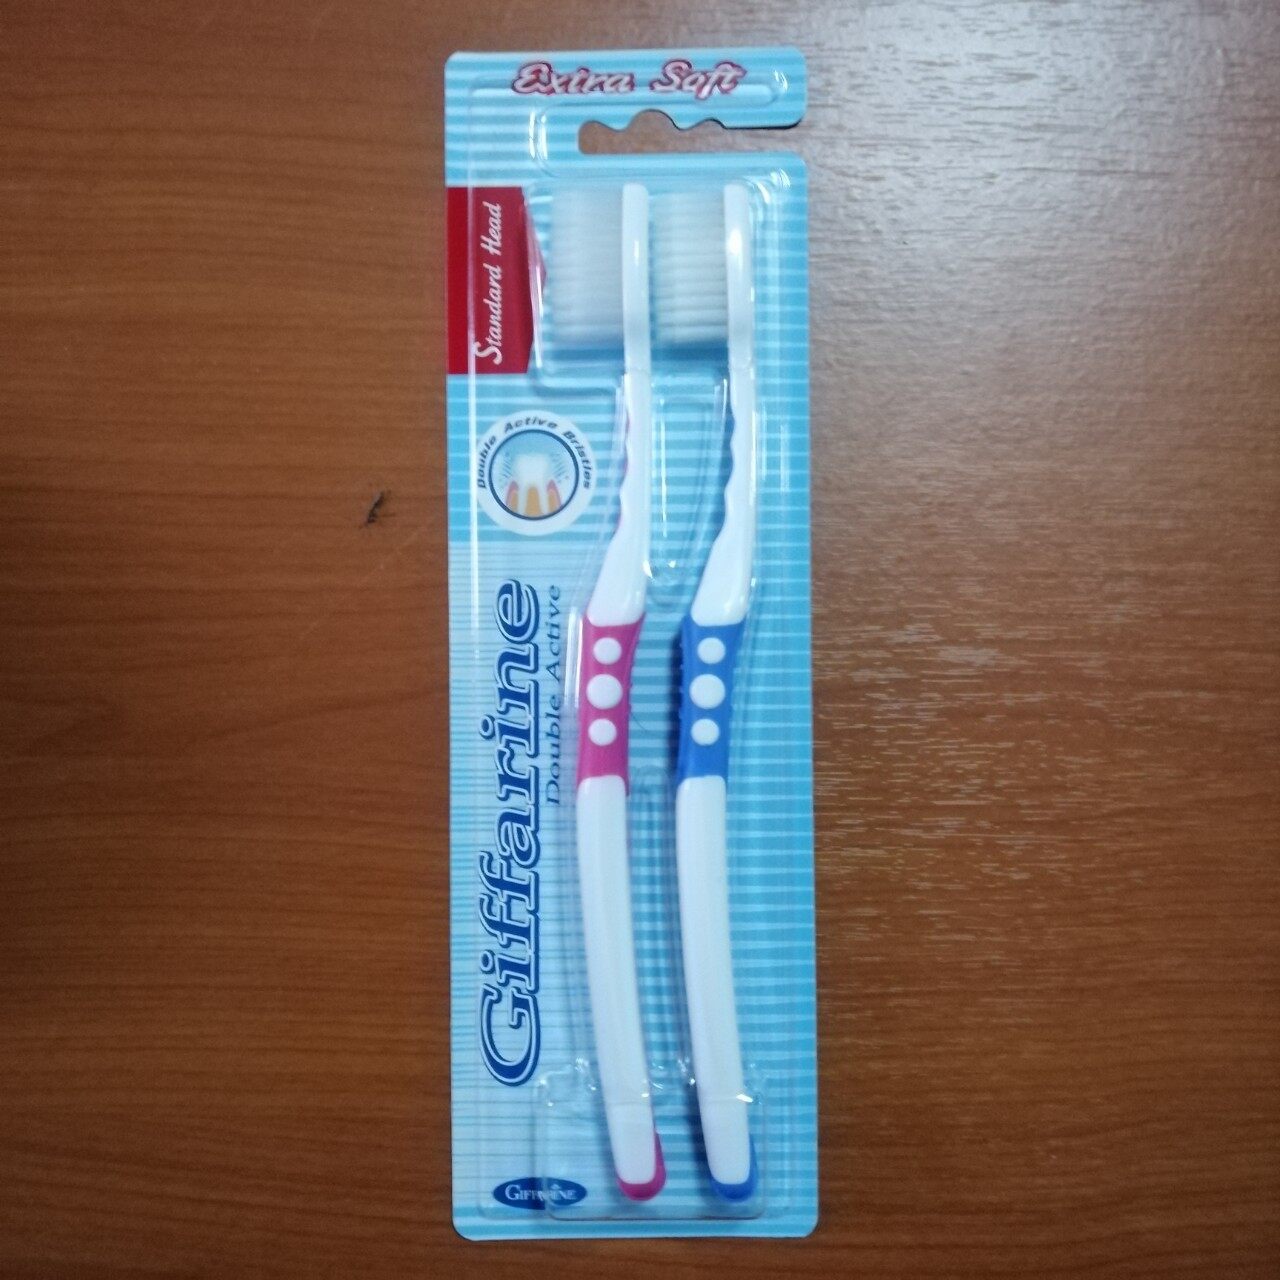 SALE กิฟฟารีน แปรงสีฟันขนนุ่ม แปรงสีฟัน ดับเบิล แอคทีฟ สีชมพู+ฟ้า (2 ชิ้น) แปรงสีฟันดูแลเหงือก แปรงสีฟันขจัดคราบหินปูน